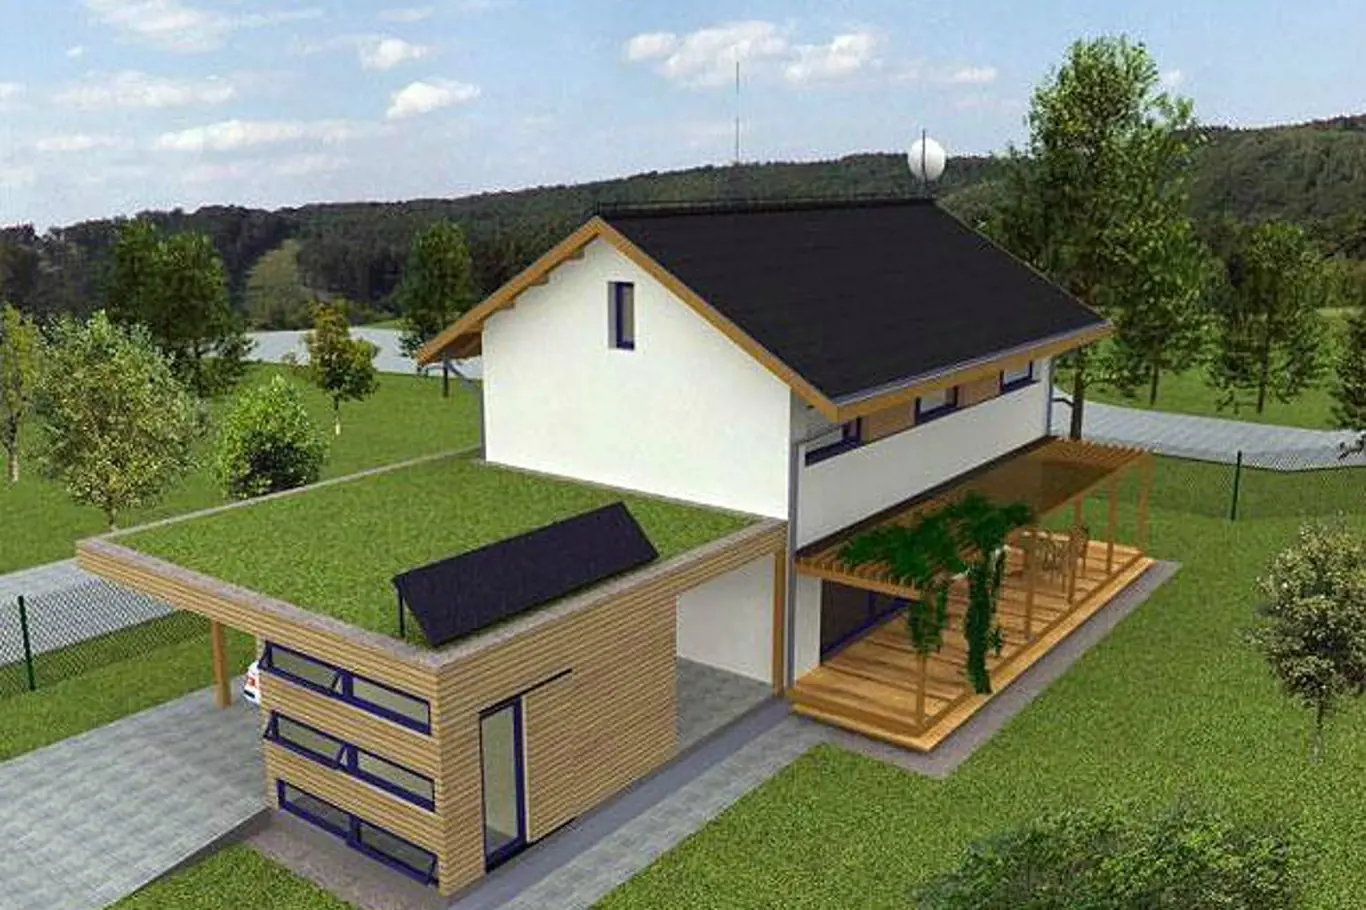 Tradiční koncept jednoduché dvoupodlažní hmoty domu je zakryt sedlovou střechou s výraznými stínícími přesahy. Stavba je vybavena řízeným větráním s rekuperací tepla, k ohřevu jsou použity elektrické přímotopné infrapanely a solární panely. Doplňkovým ...